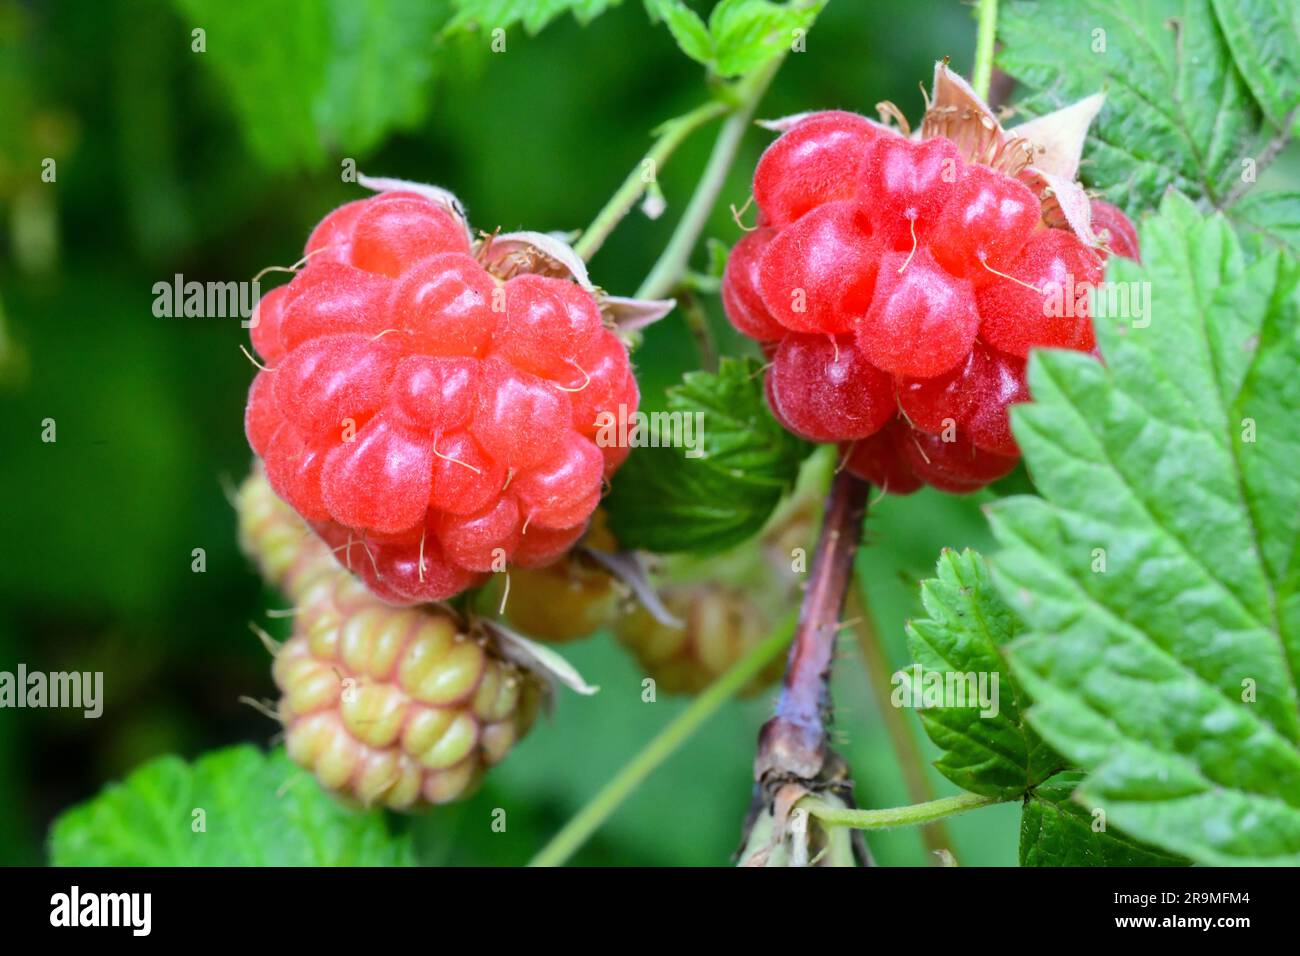 Framboise Rubus fruits à diverses étapes de développement - Rubus parvifolius - framboises rouges sur la plante - souvent mal orthographiées comme framboises Banque D'Images